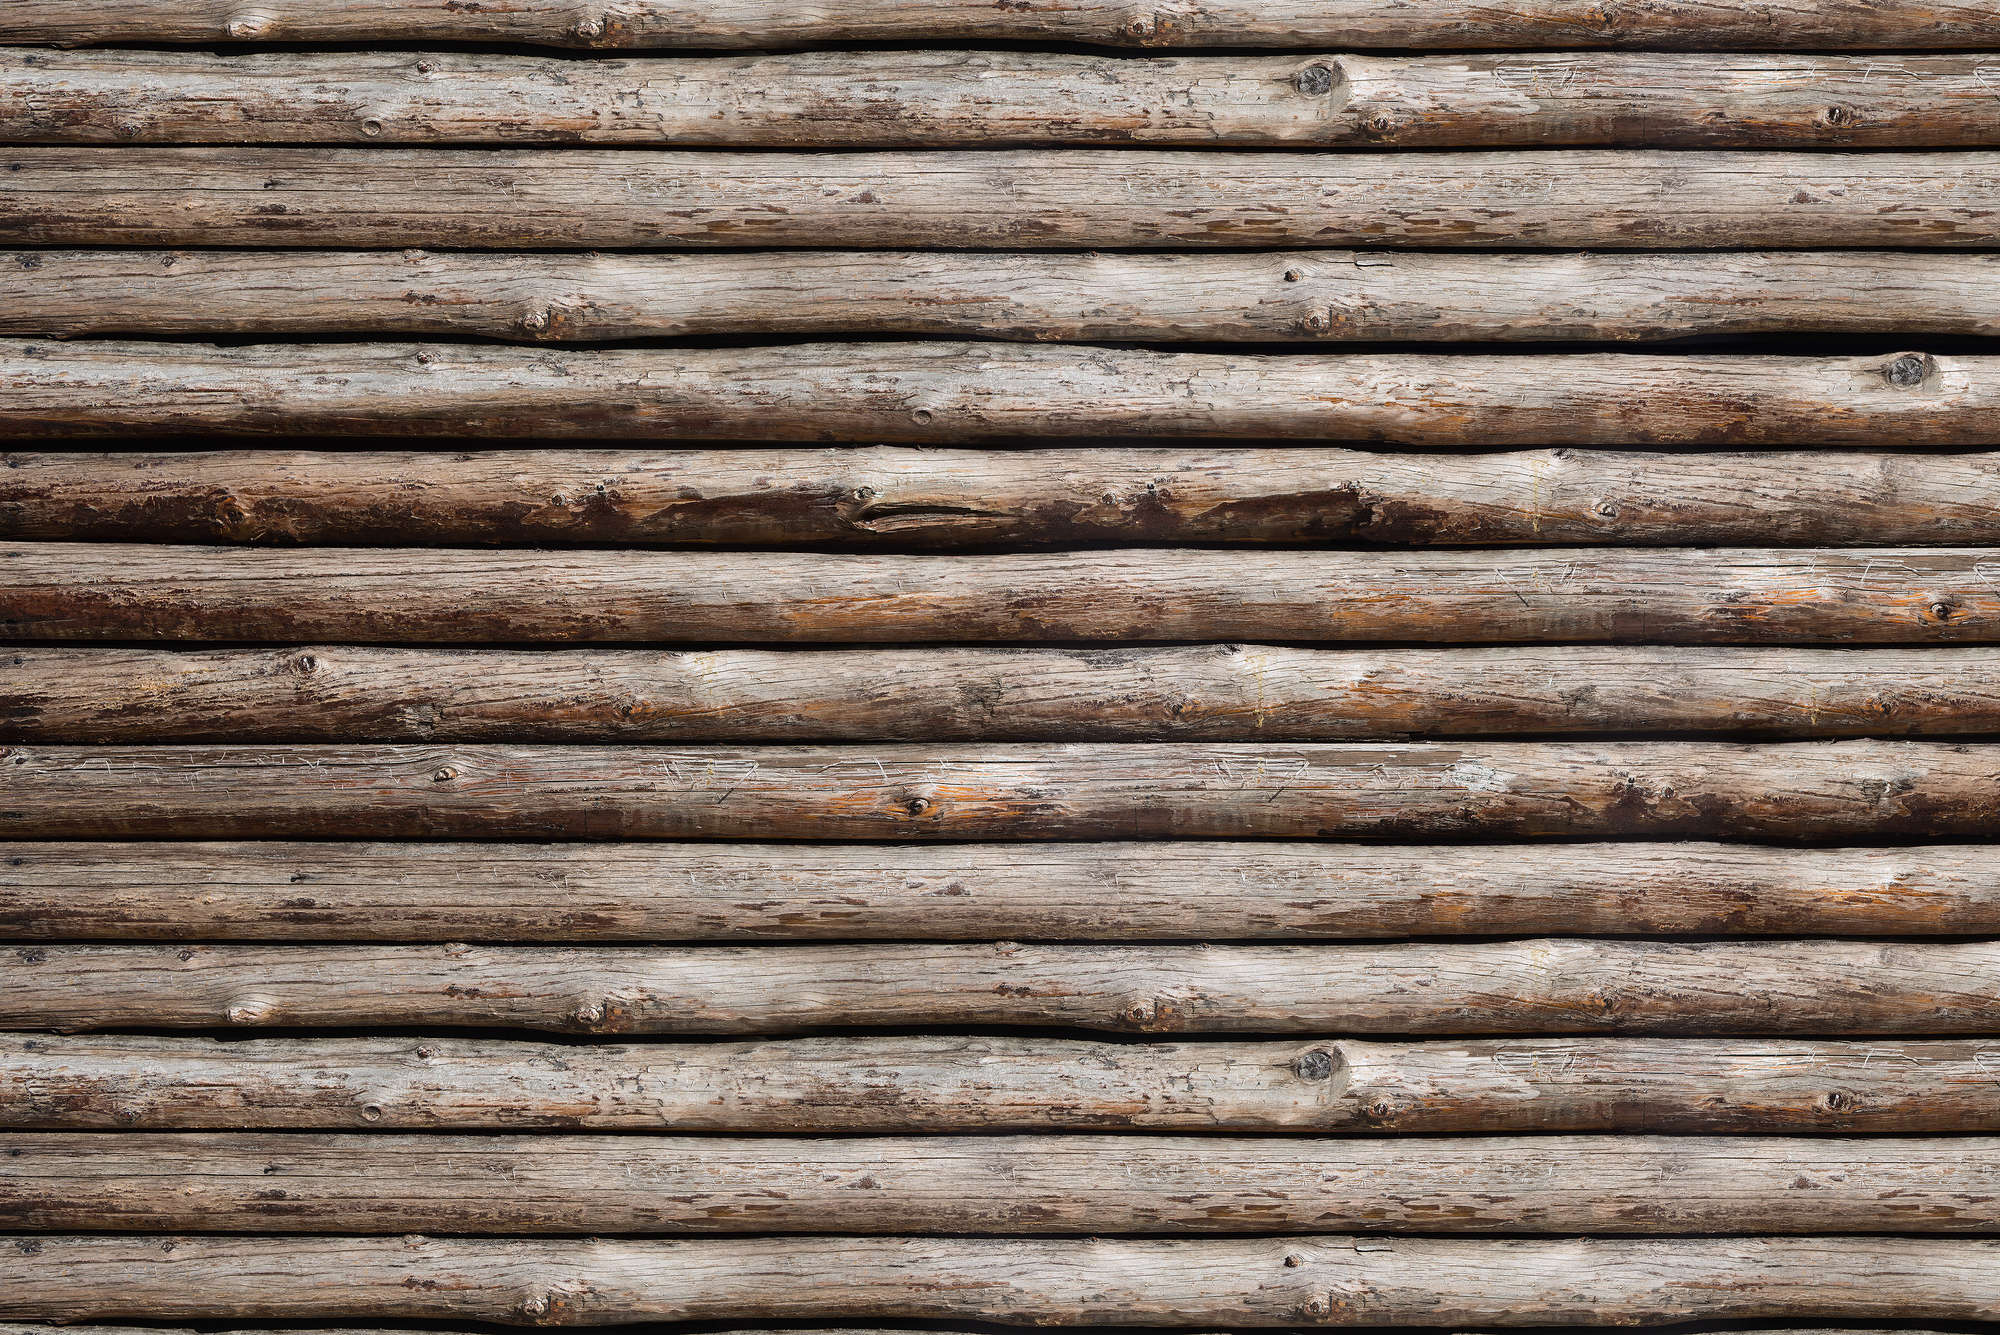             Mural de madera de cabaña de troncos sobre vellón texturizado
        